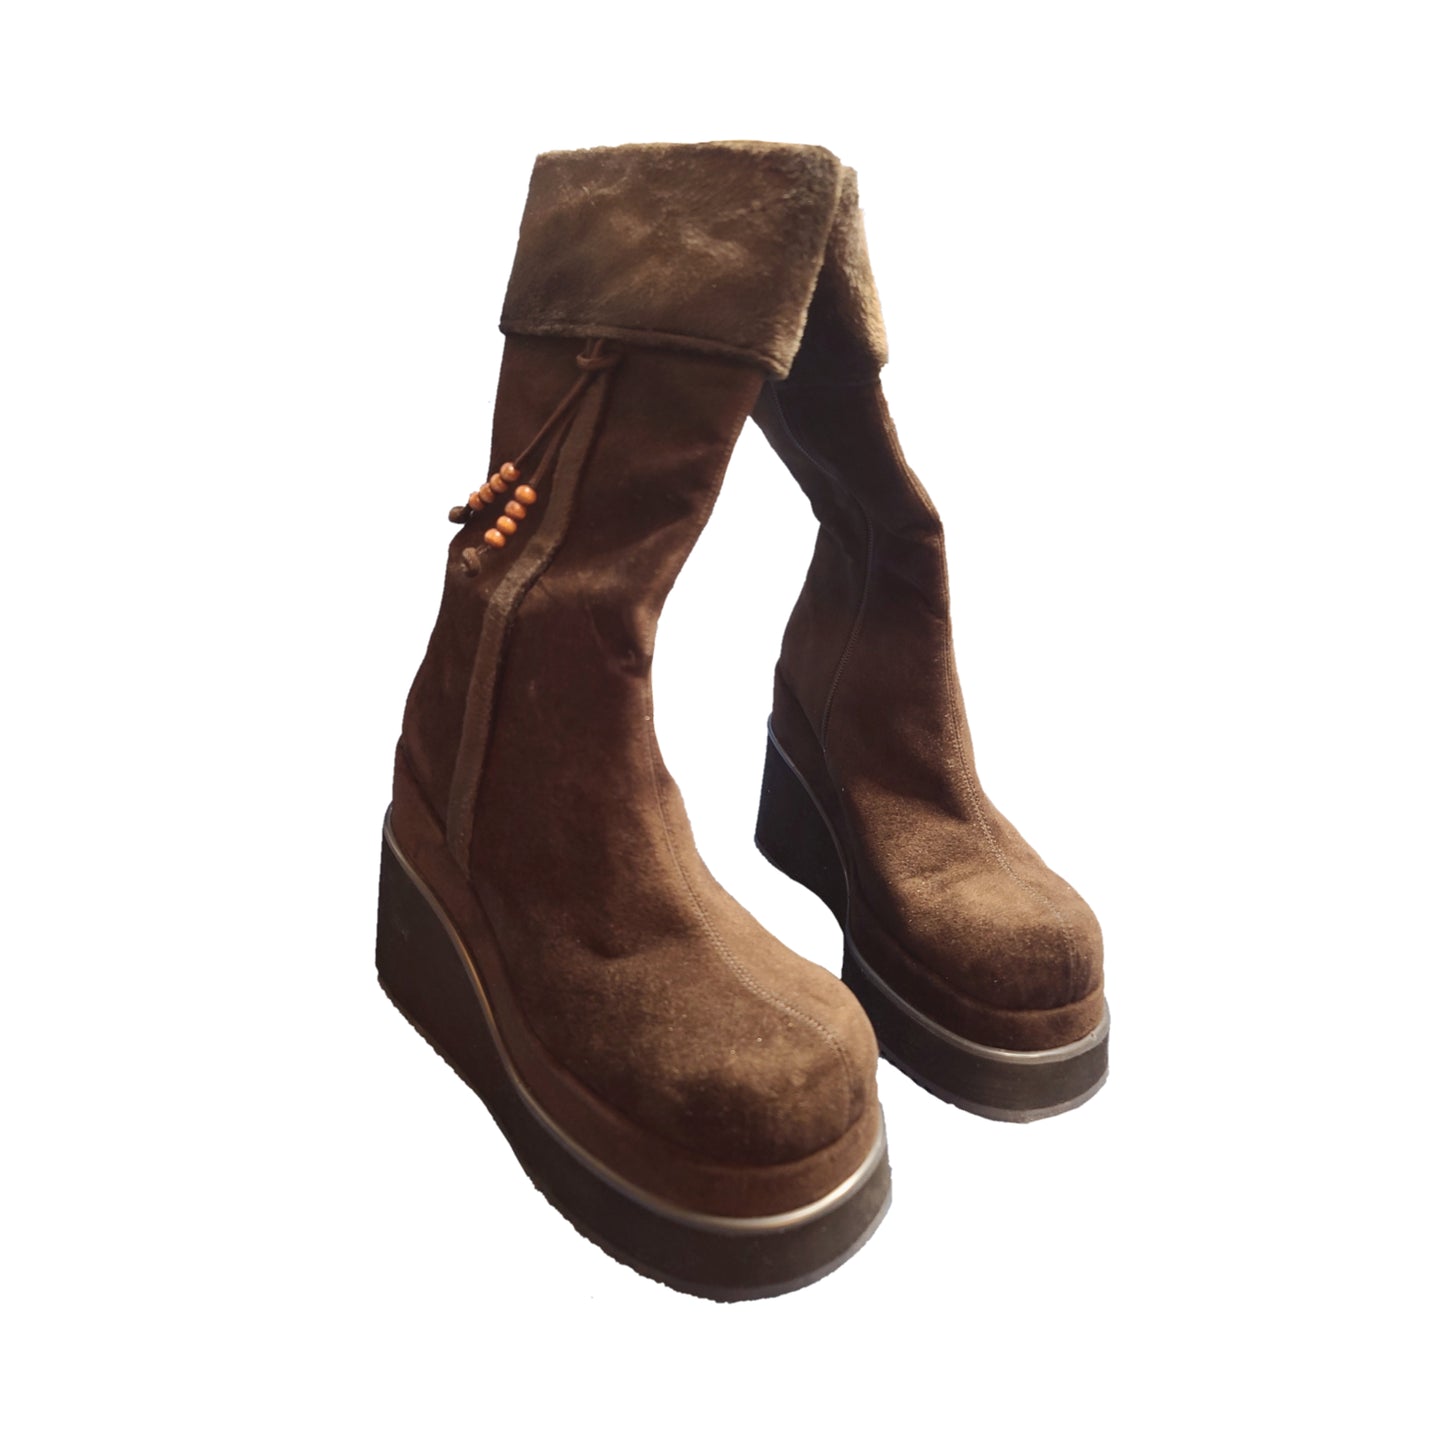 Boots vintage plateformes fourrure - zimfriperie